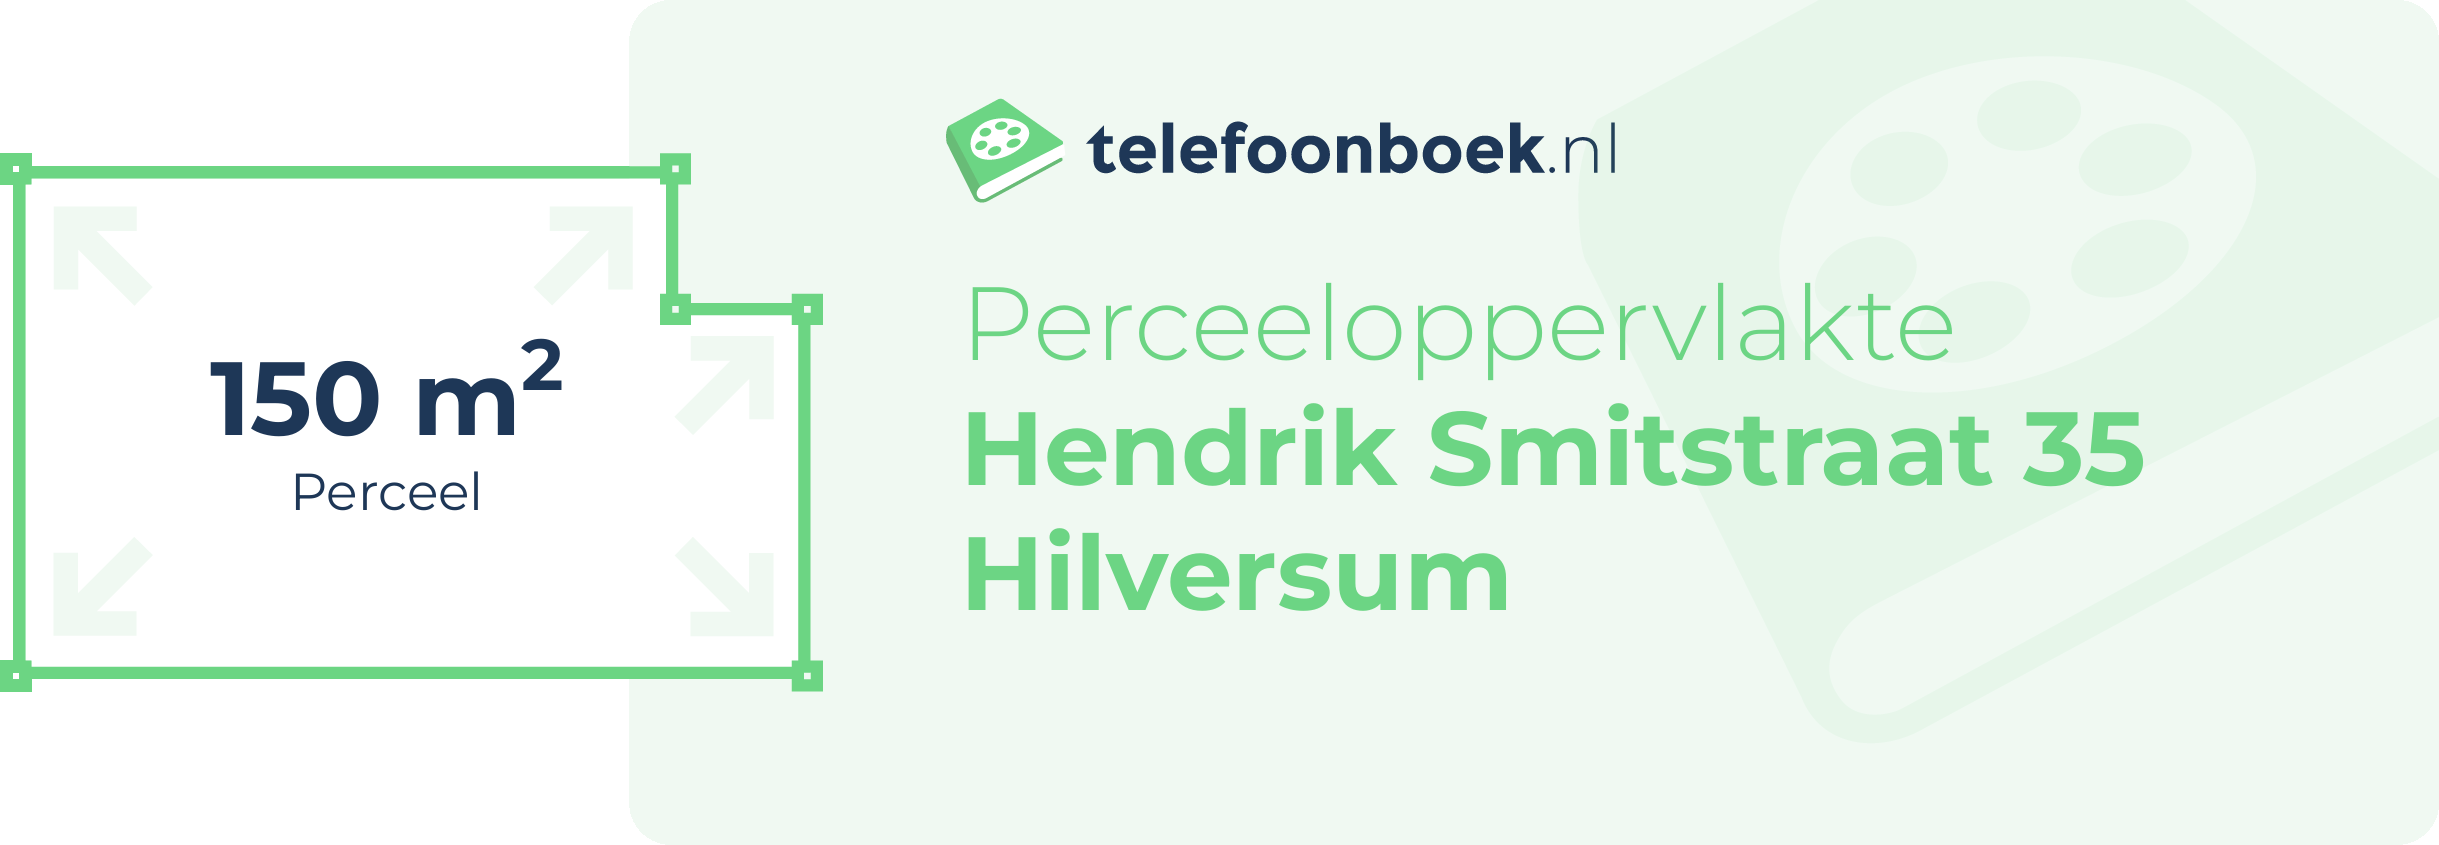 Perceeloppervlakte Hendrik Smitstraat 35 Hilversum